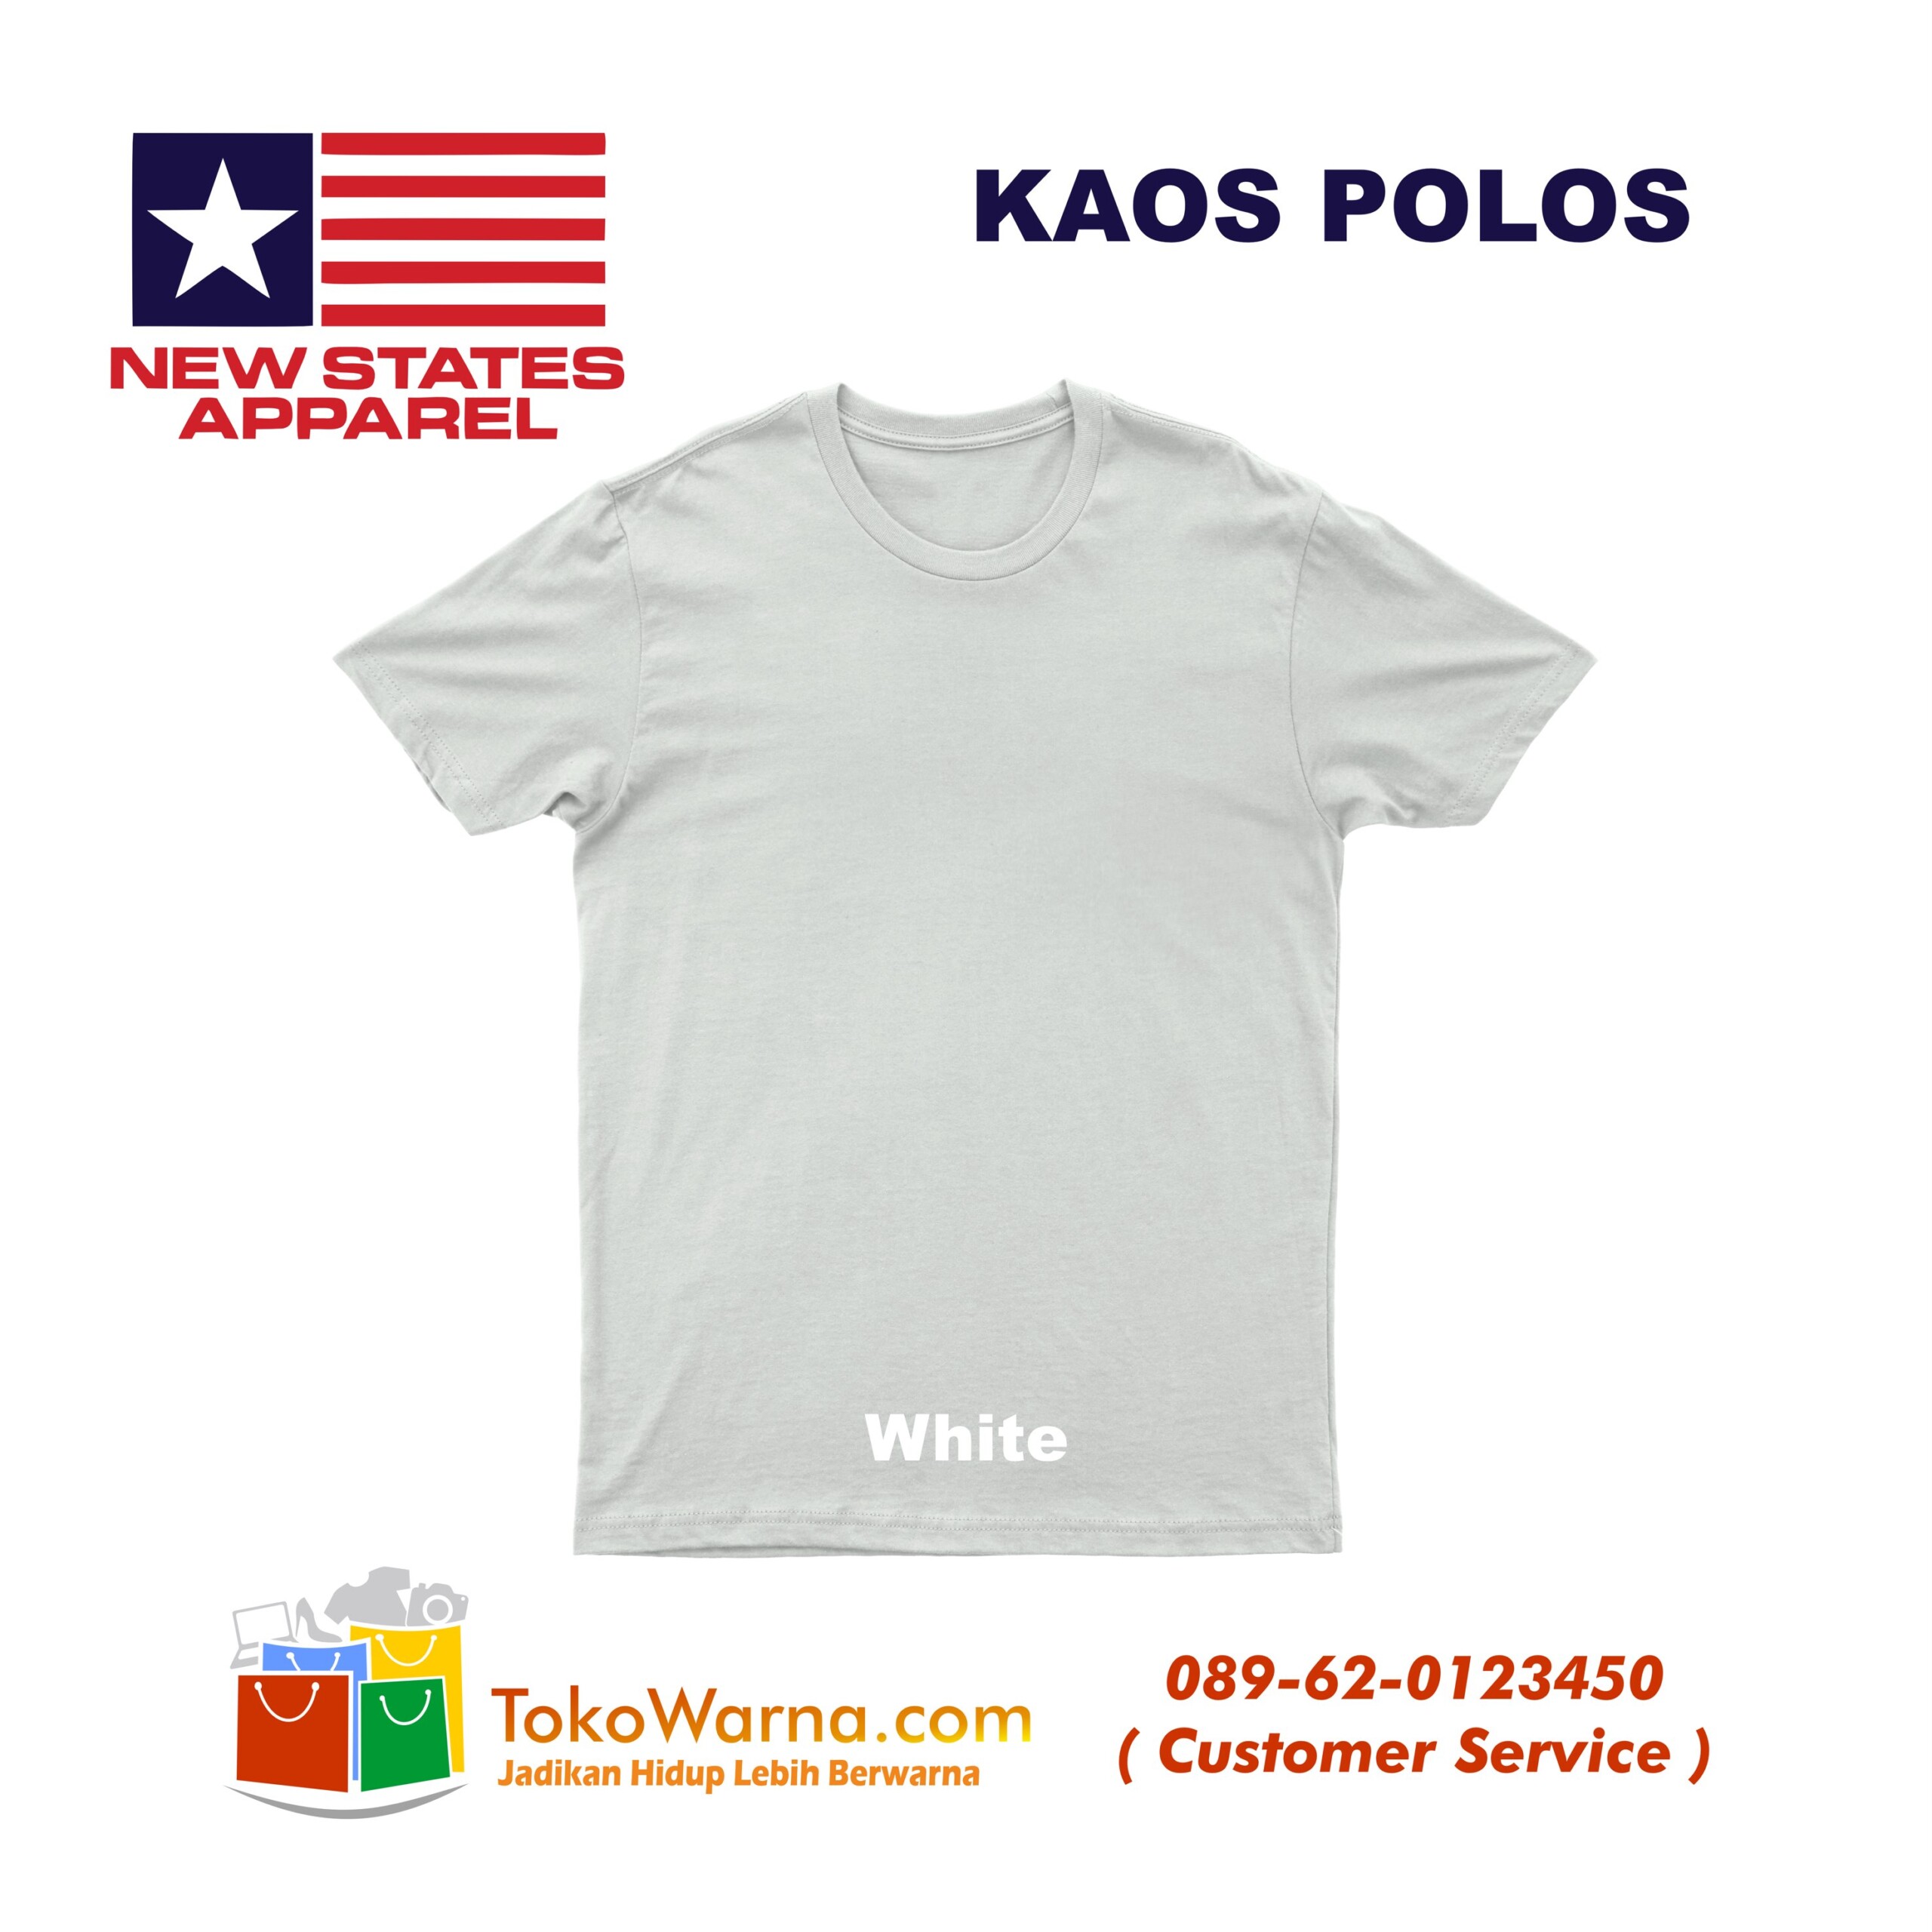 (NSA) New States Apparel Soft Tee 30s Kaos Polos White